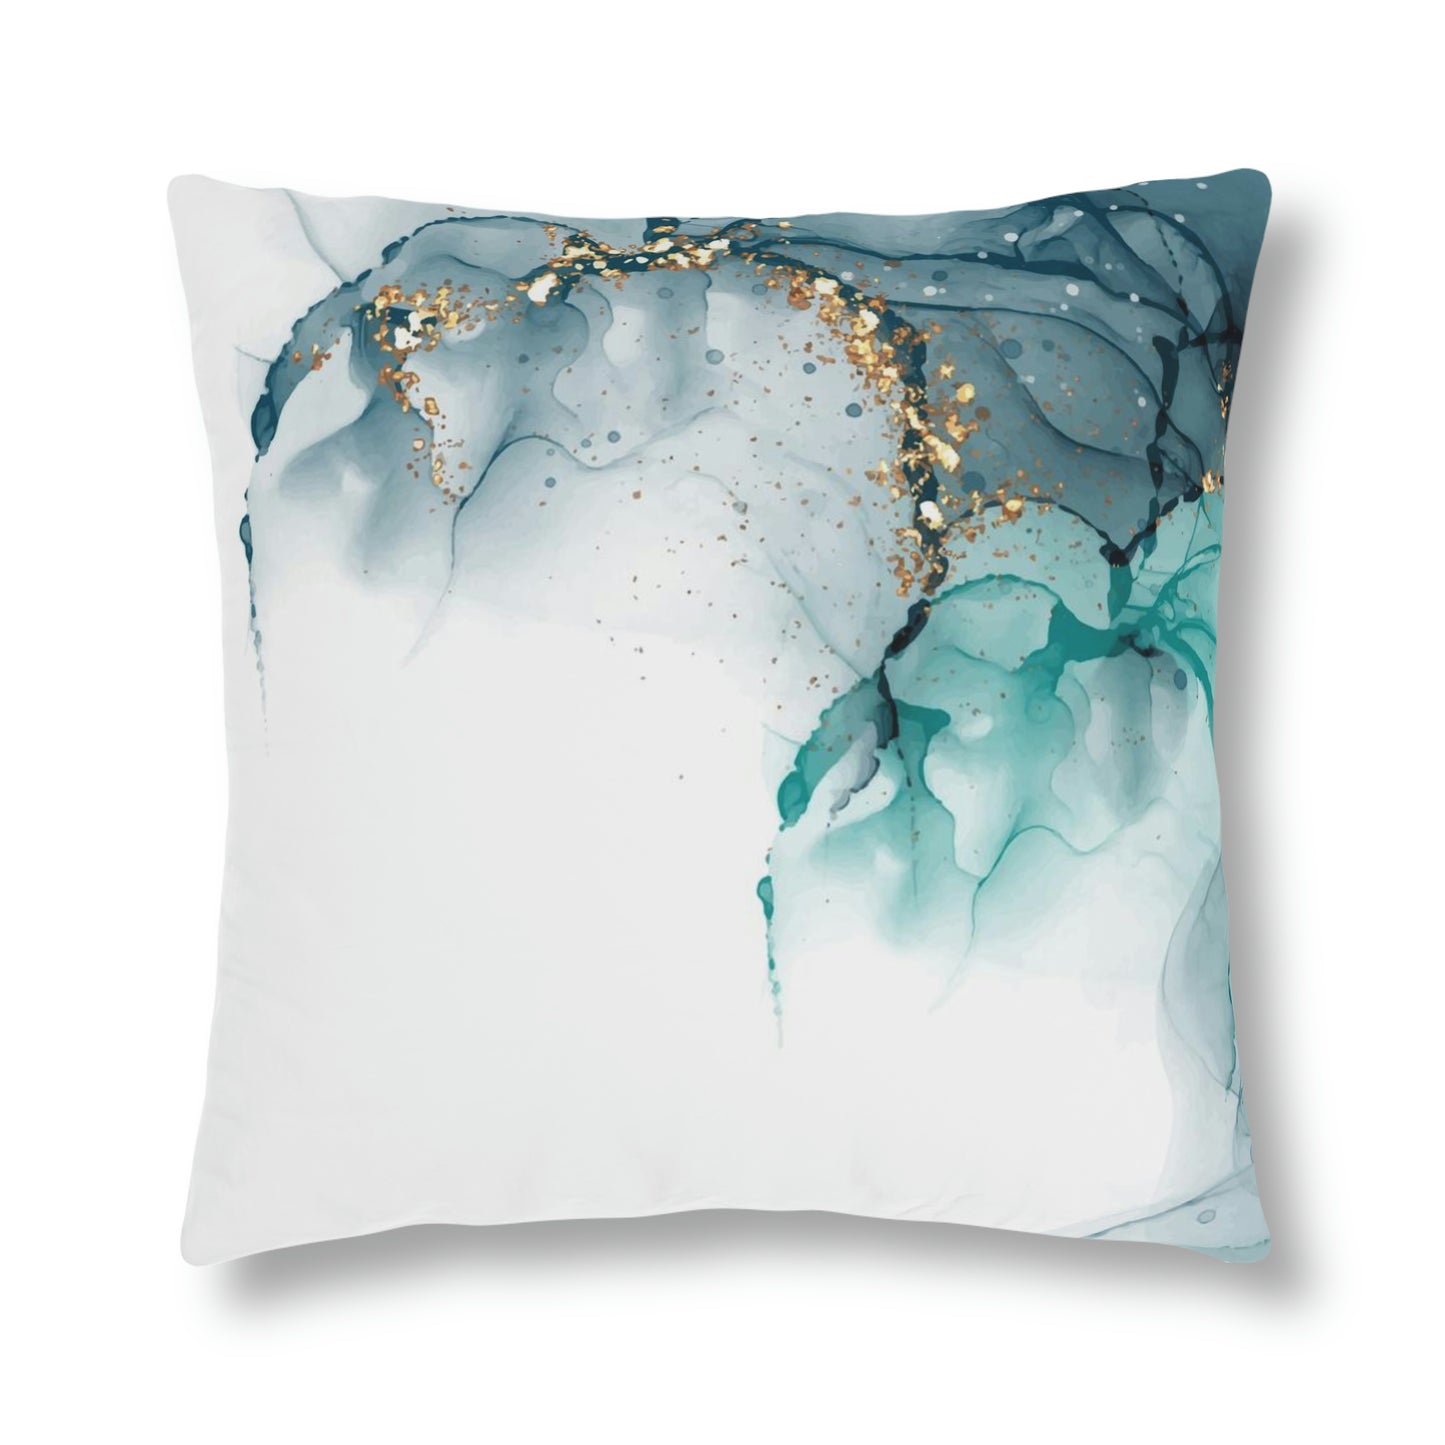 Waterproof Pillows